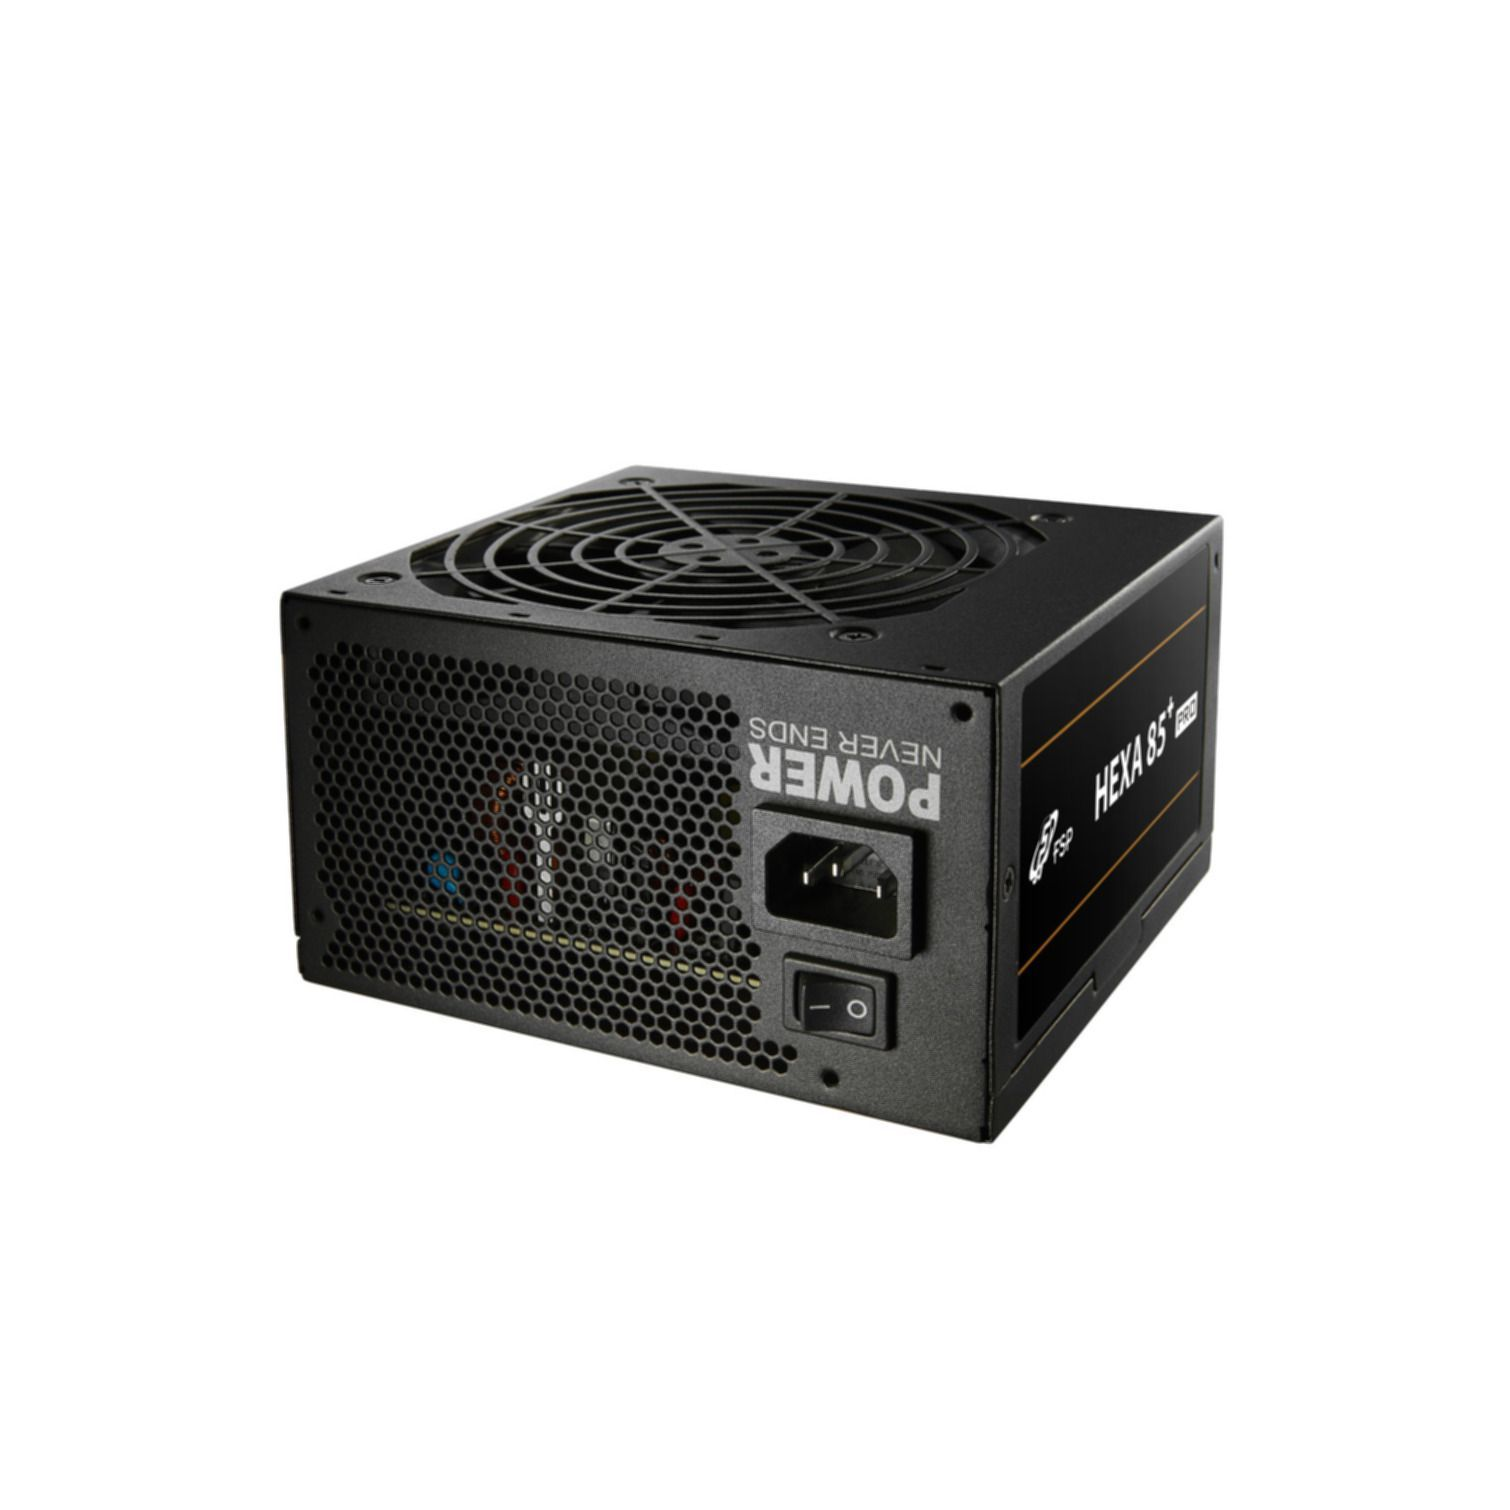 SOURCE Netzteil HEXA Watt 85+ 550 PRO FORTRON PC